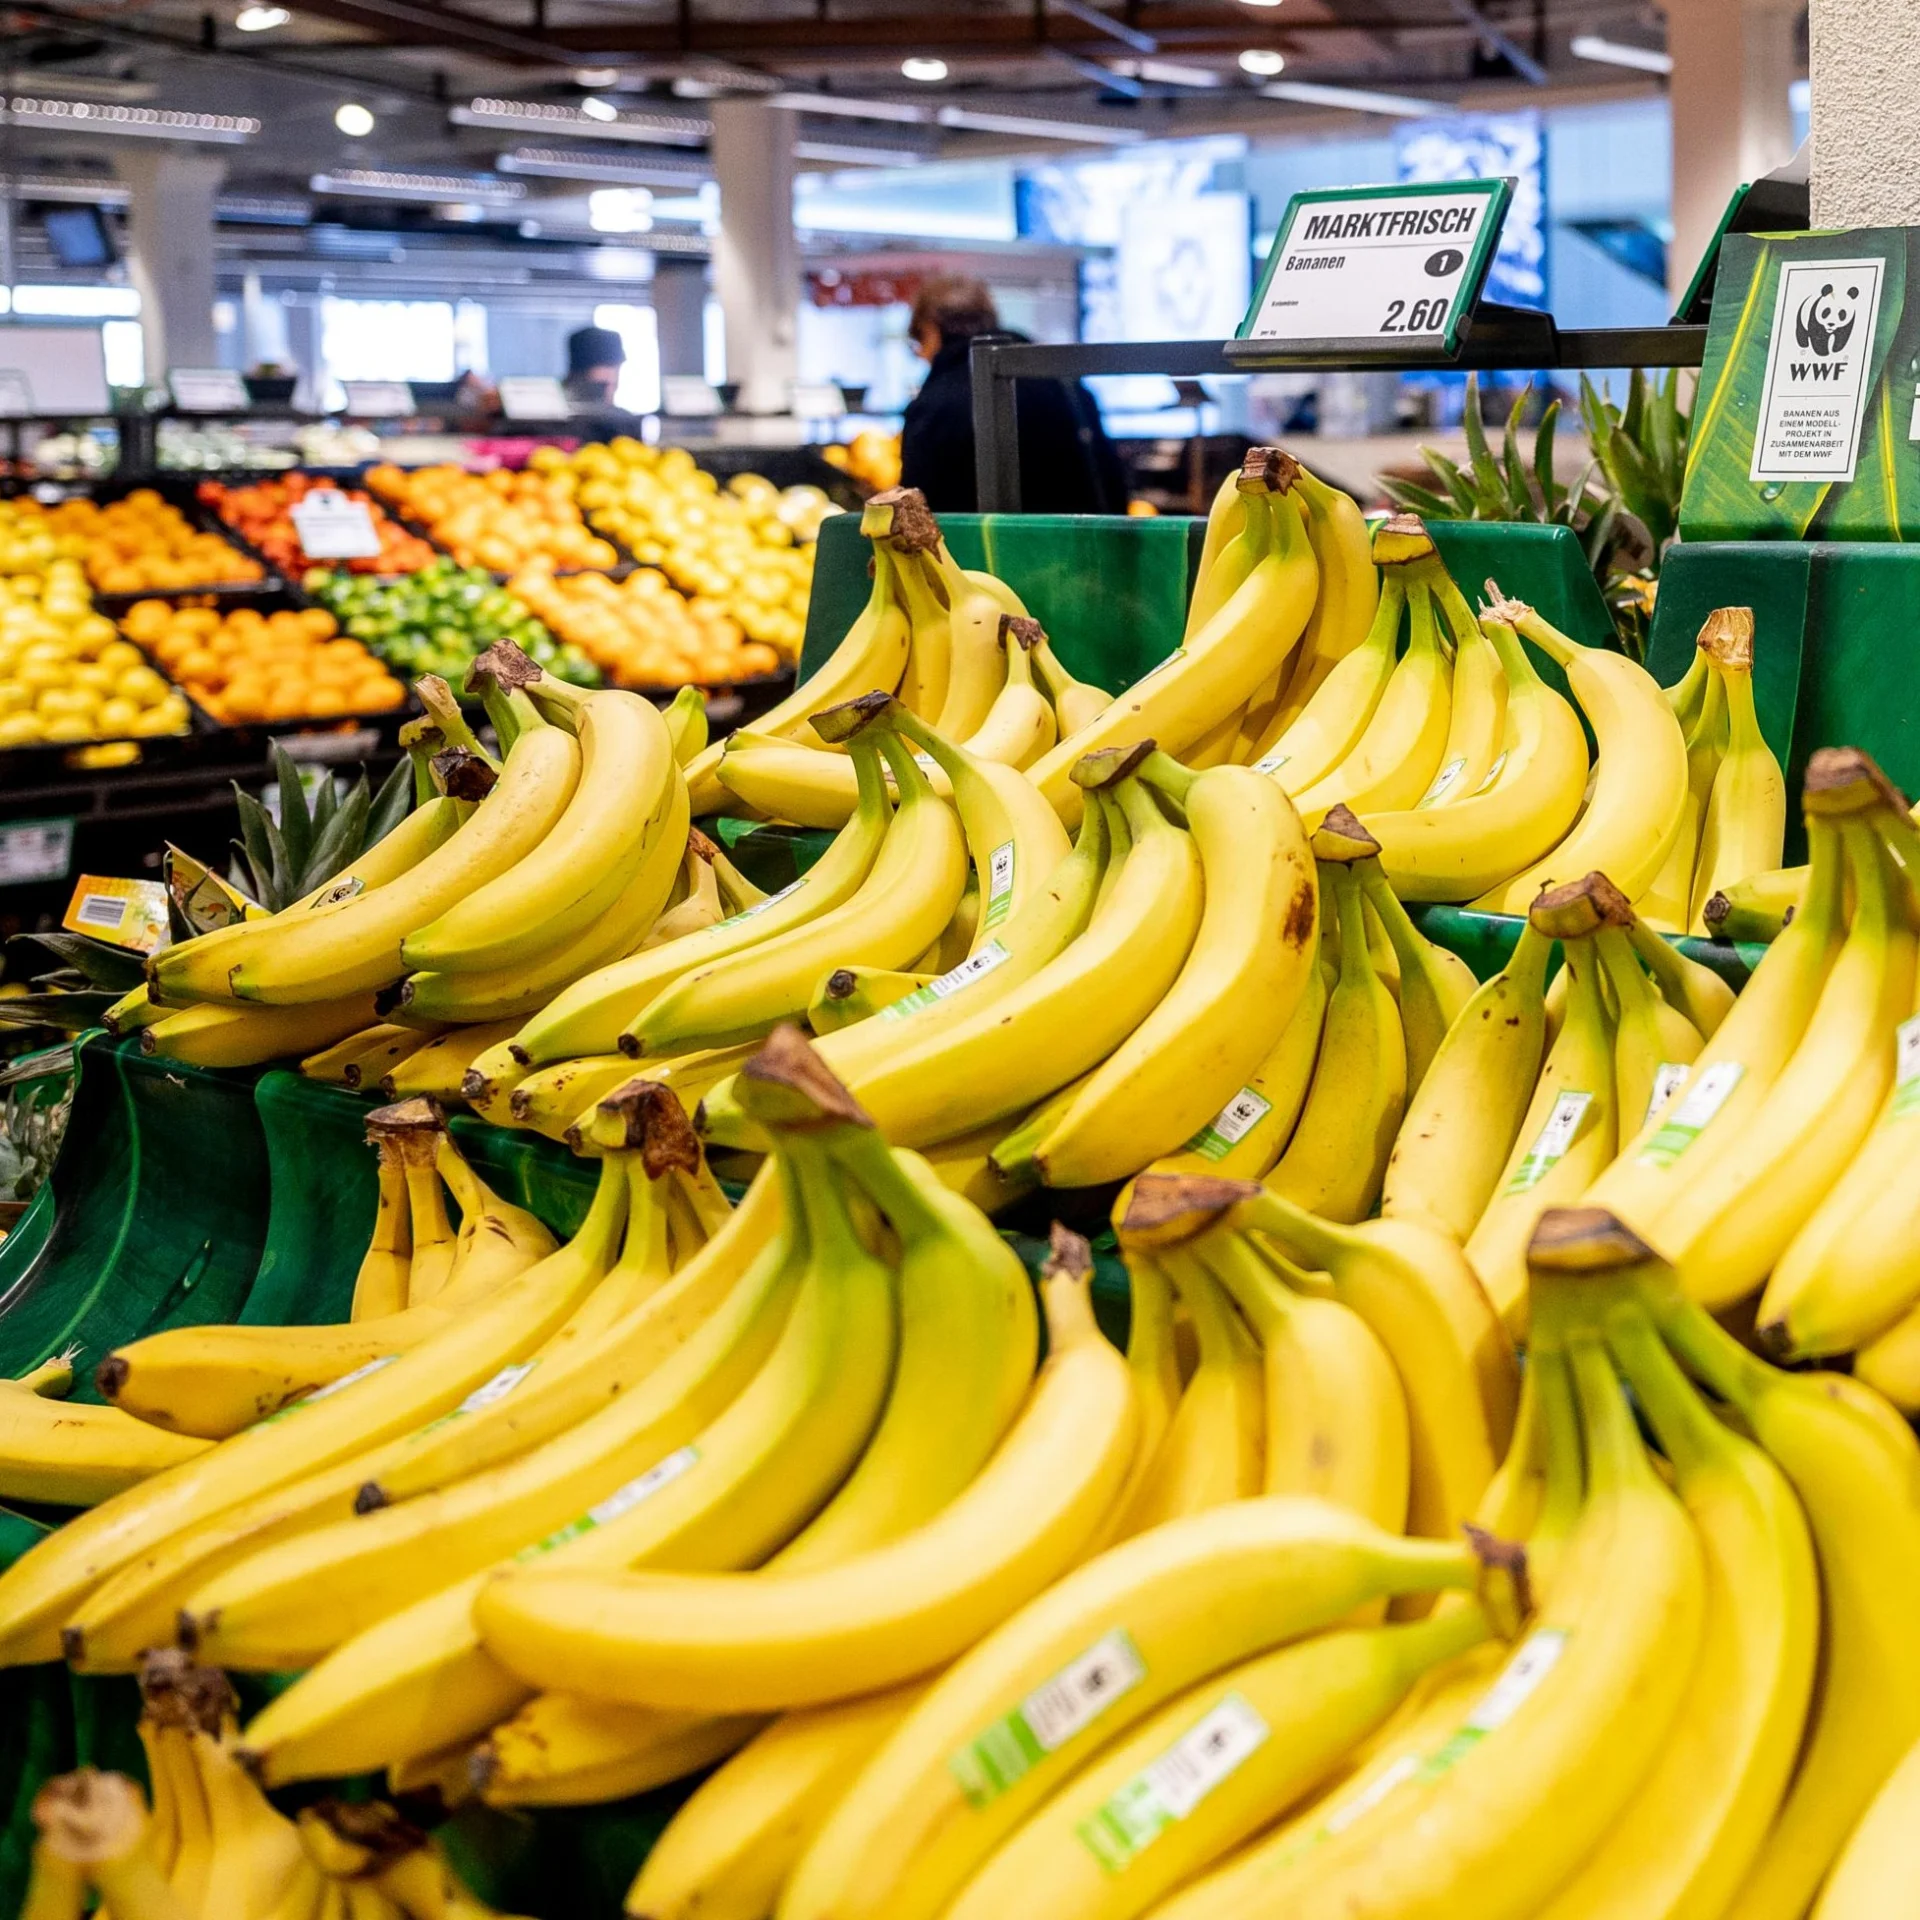 Une pile de bananes jaunes sur les étagères du supermarché.